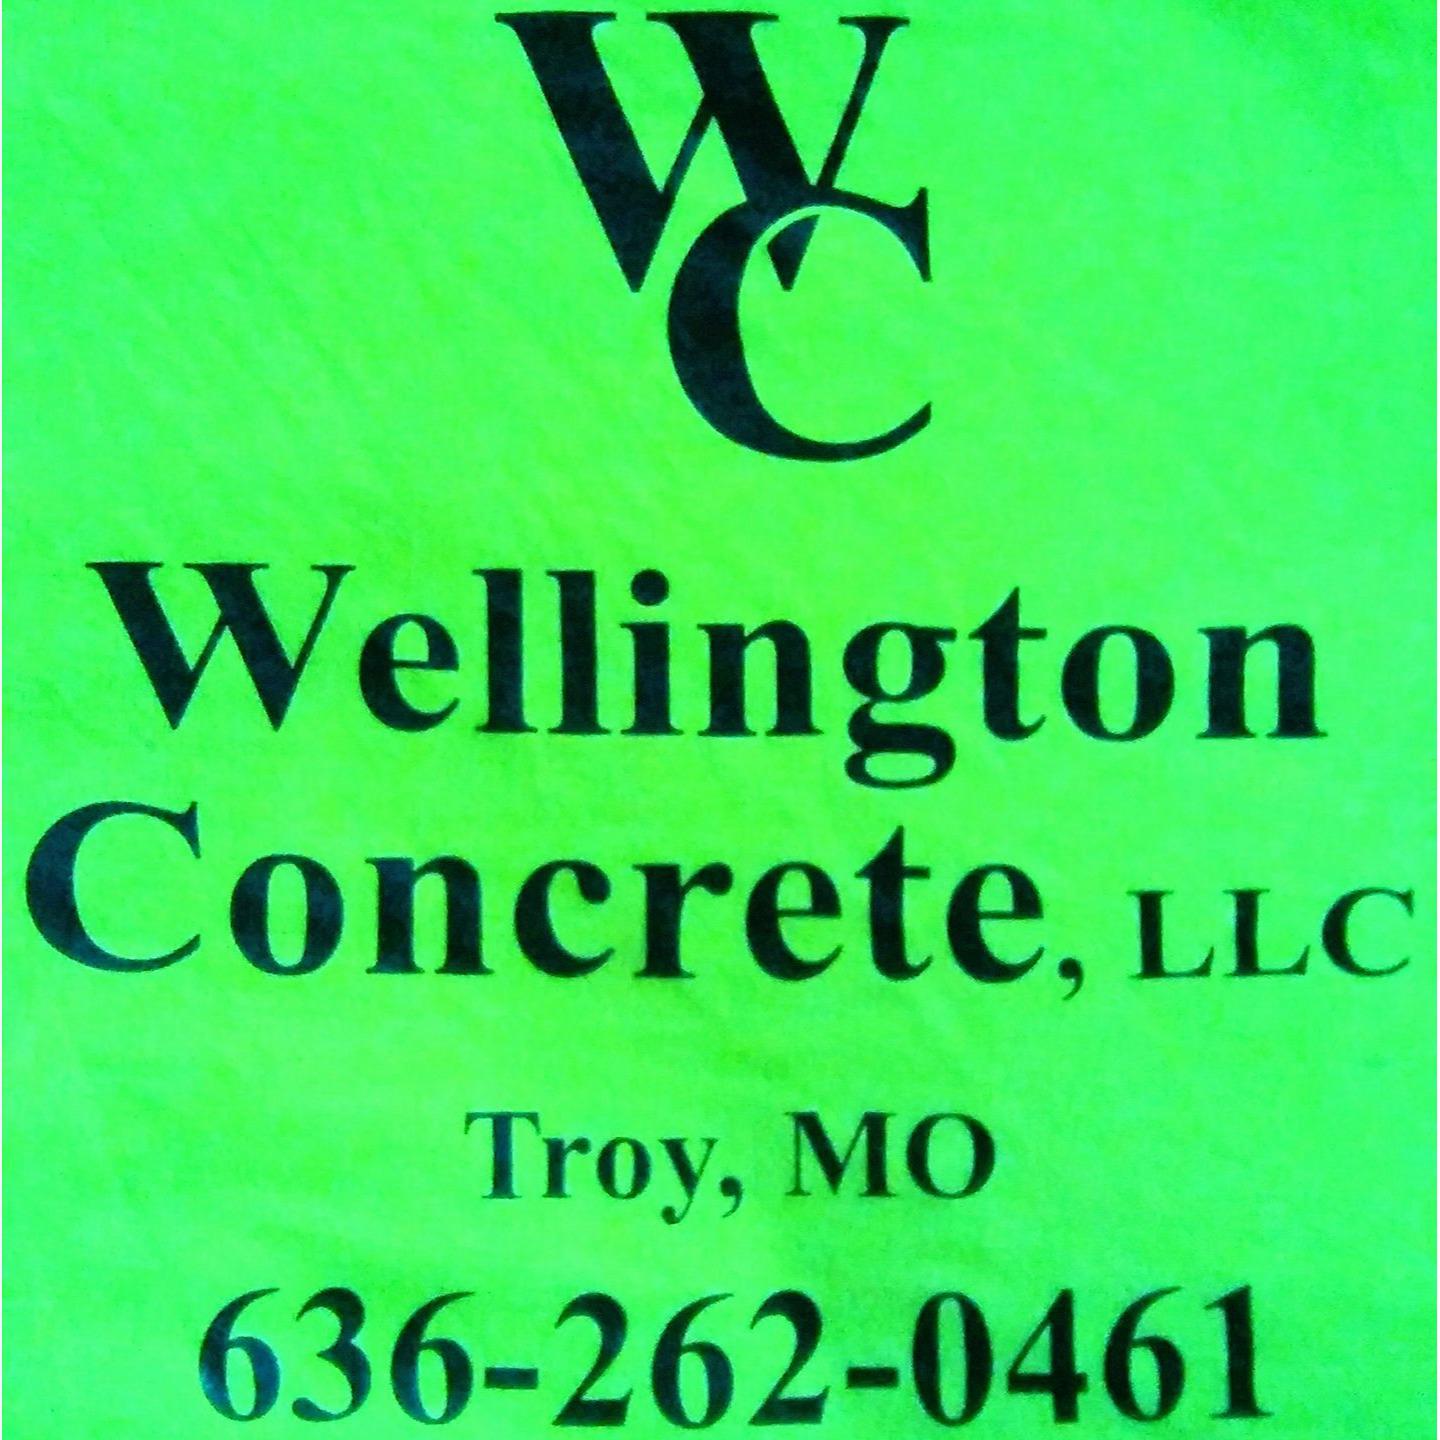 Wellington Concrete since 1997 lbc3 - Troy, MO - (636)262-0461 | ShowMeLocal.com